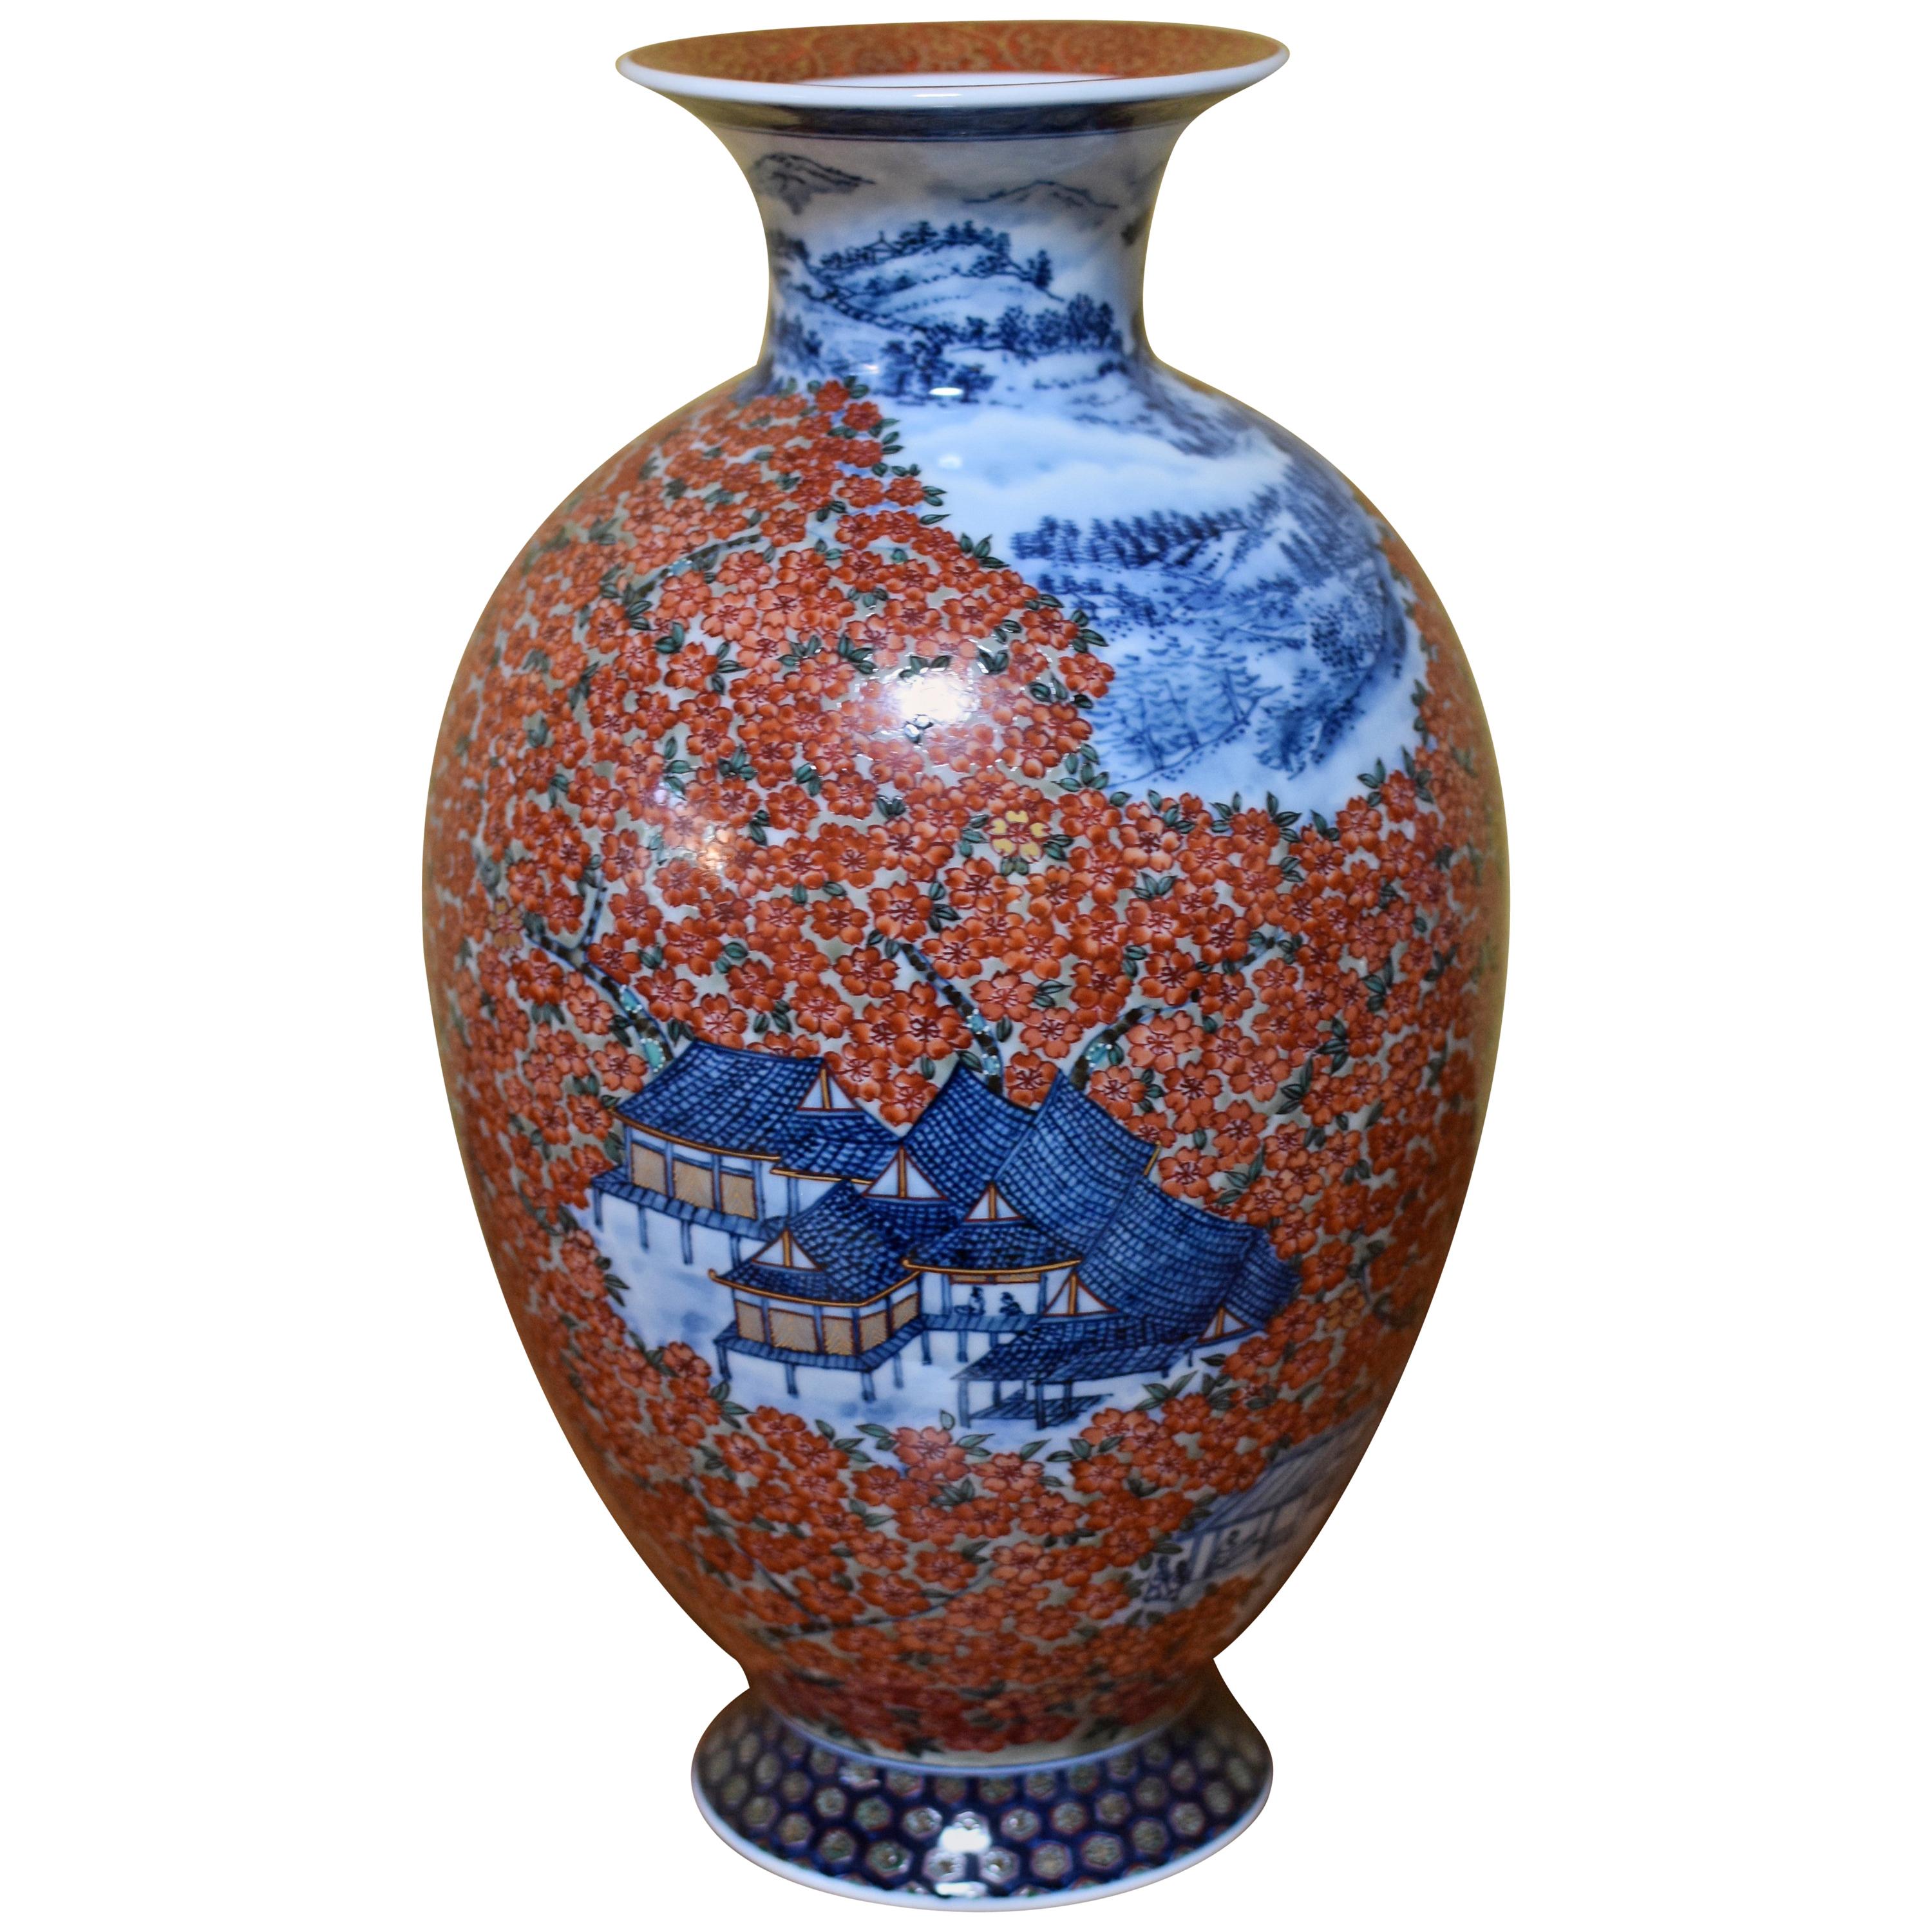 Rotblaue japanische Porzellanvase von zeitgenössischem Meisterkünstler